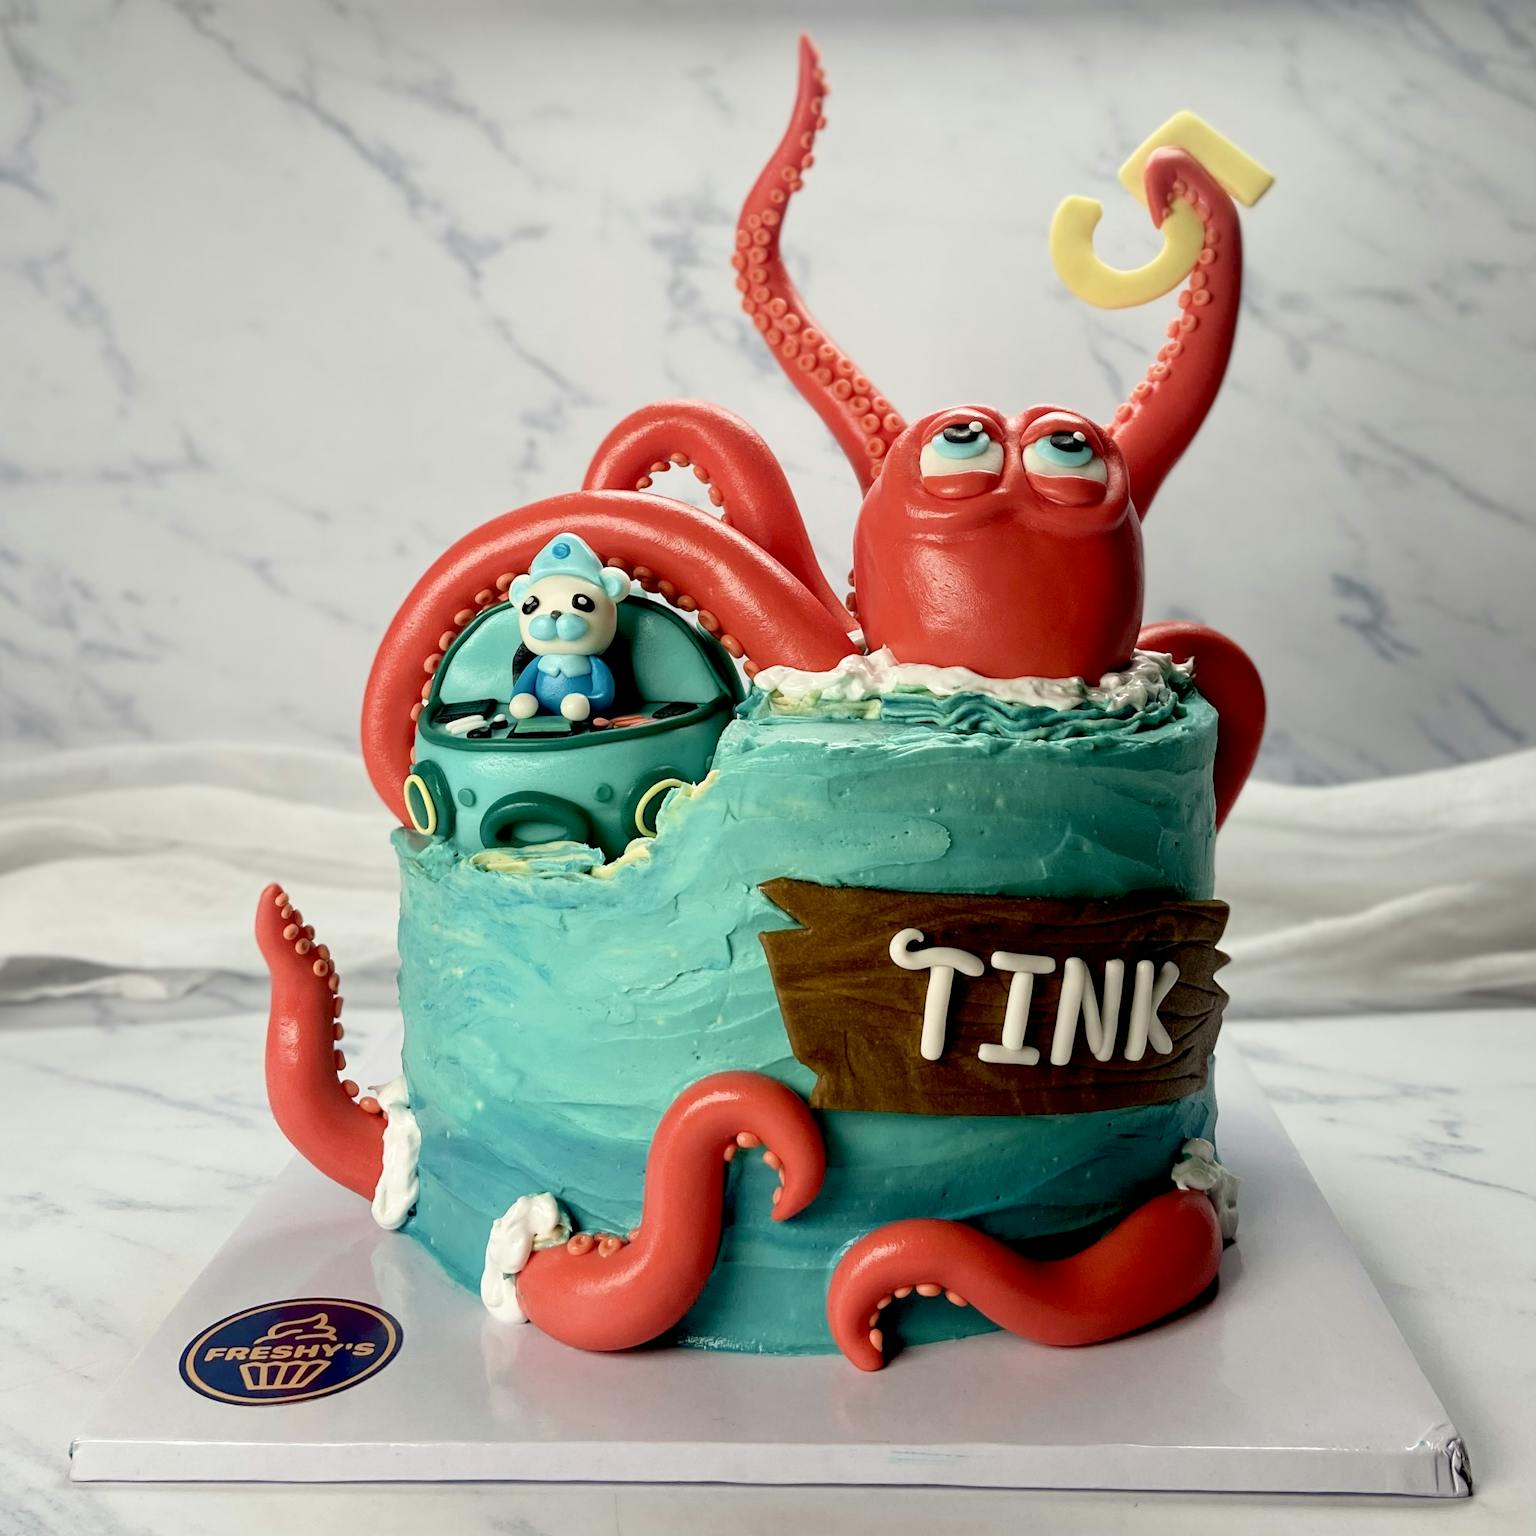 100% edible fondant sculpted kraken cake